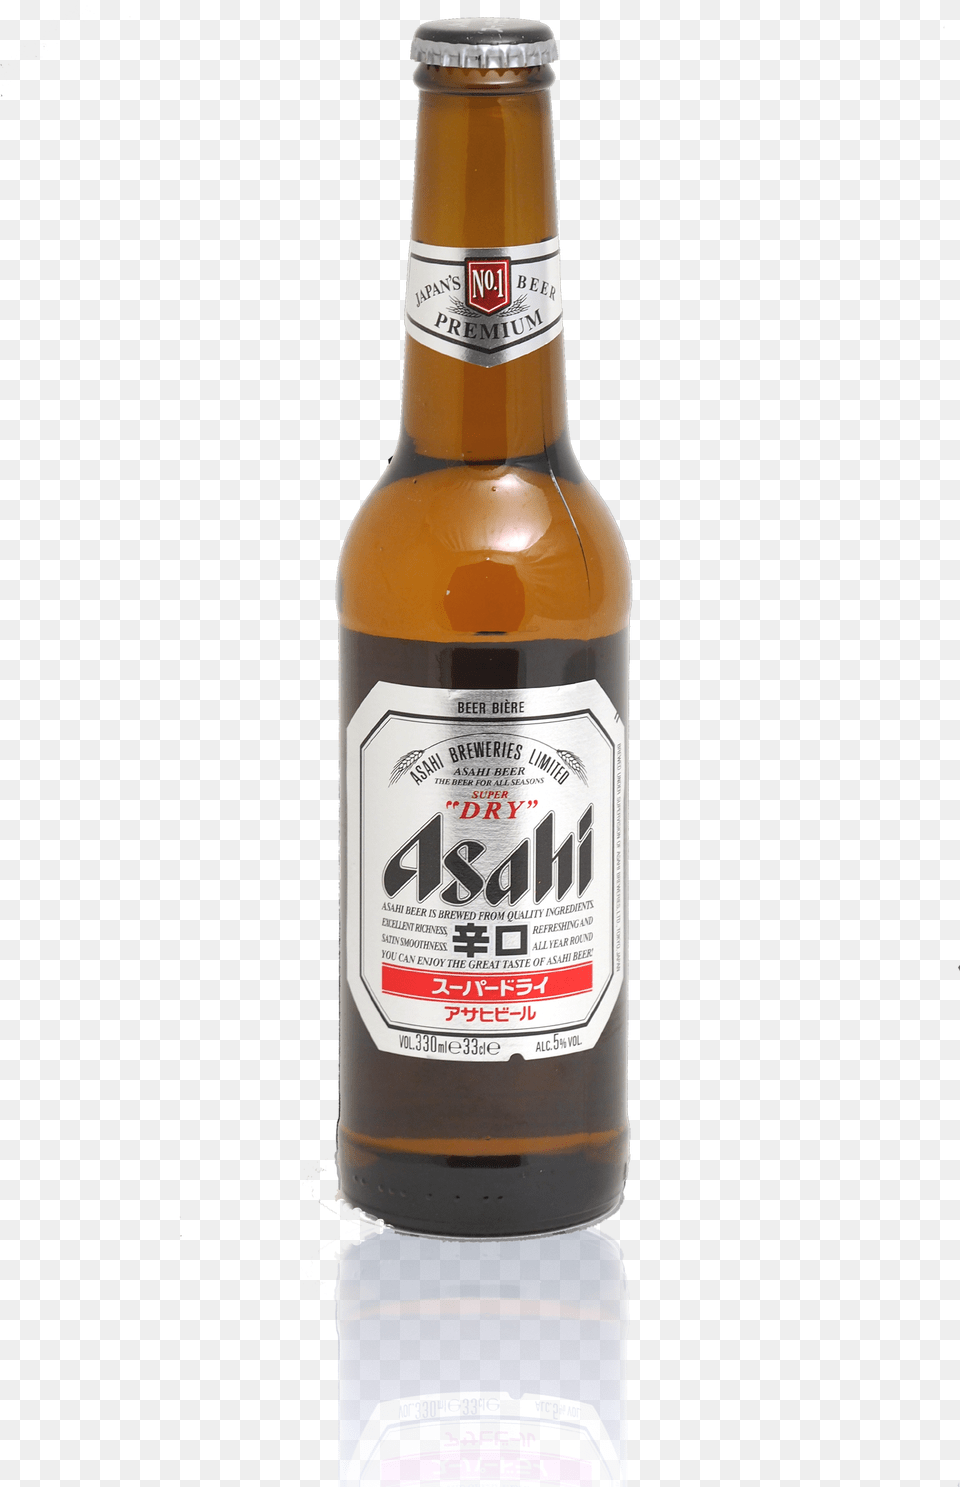 Beer Asahi Asahi Beer, Alcohol, Beer Bottle, Beverage, Bottle Free Transparent Png